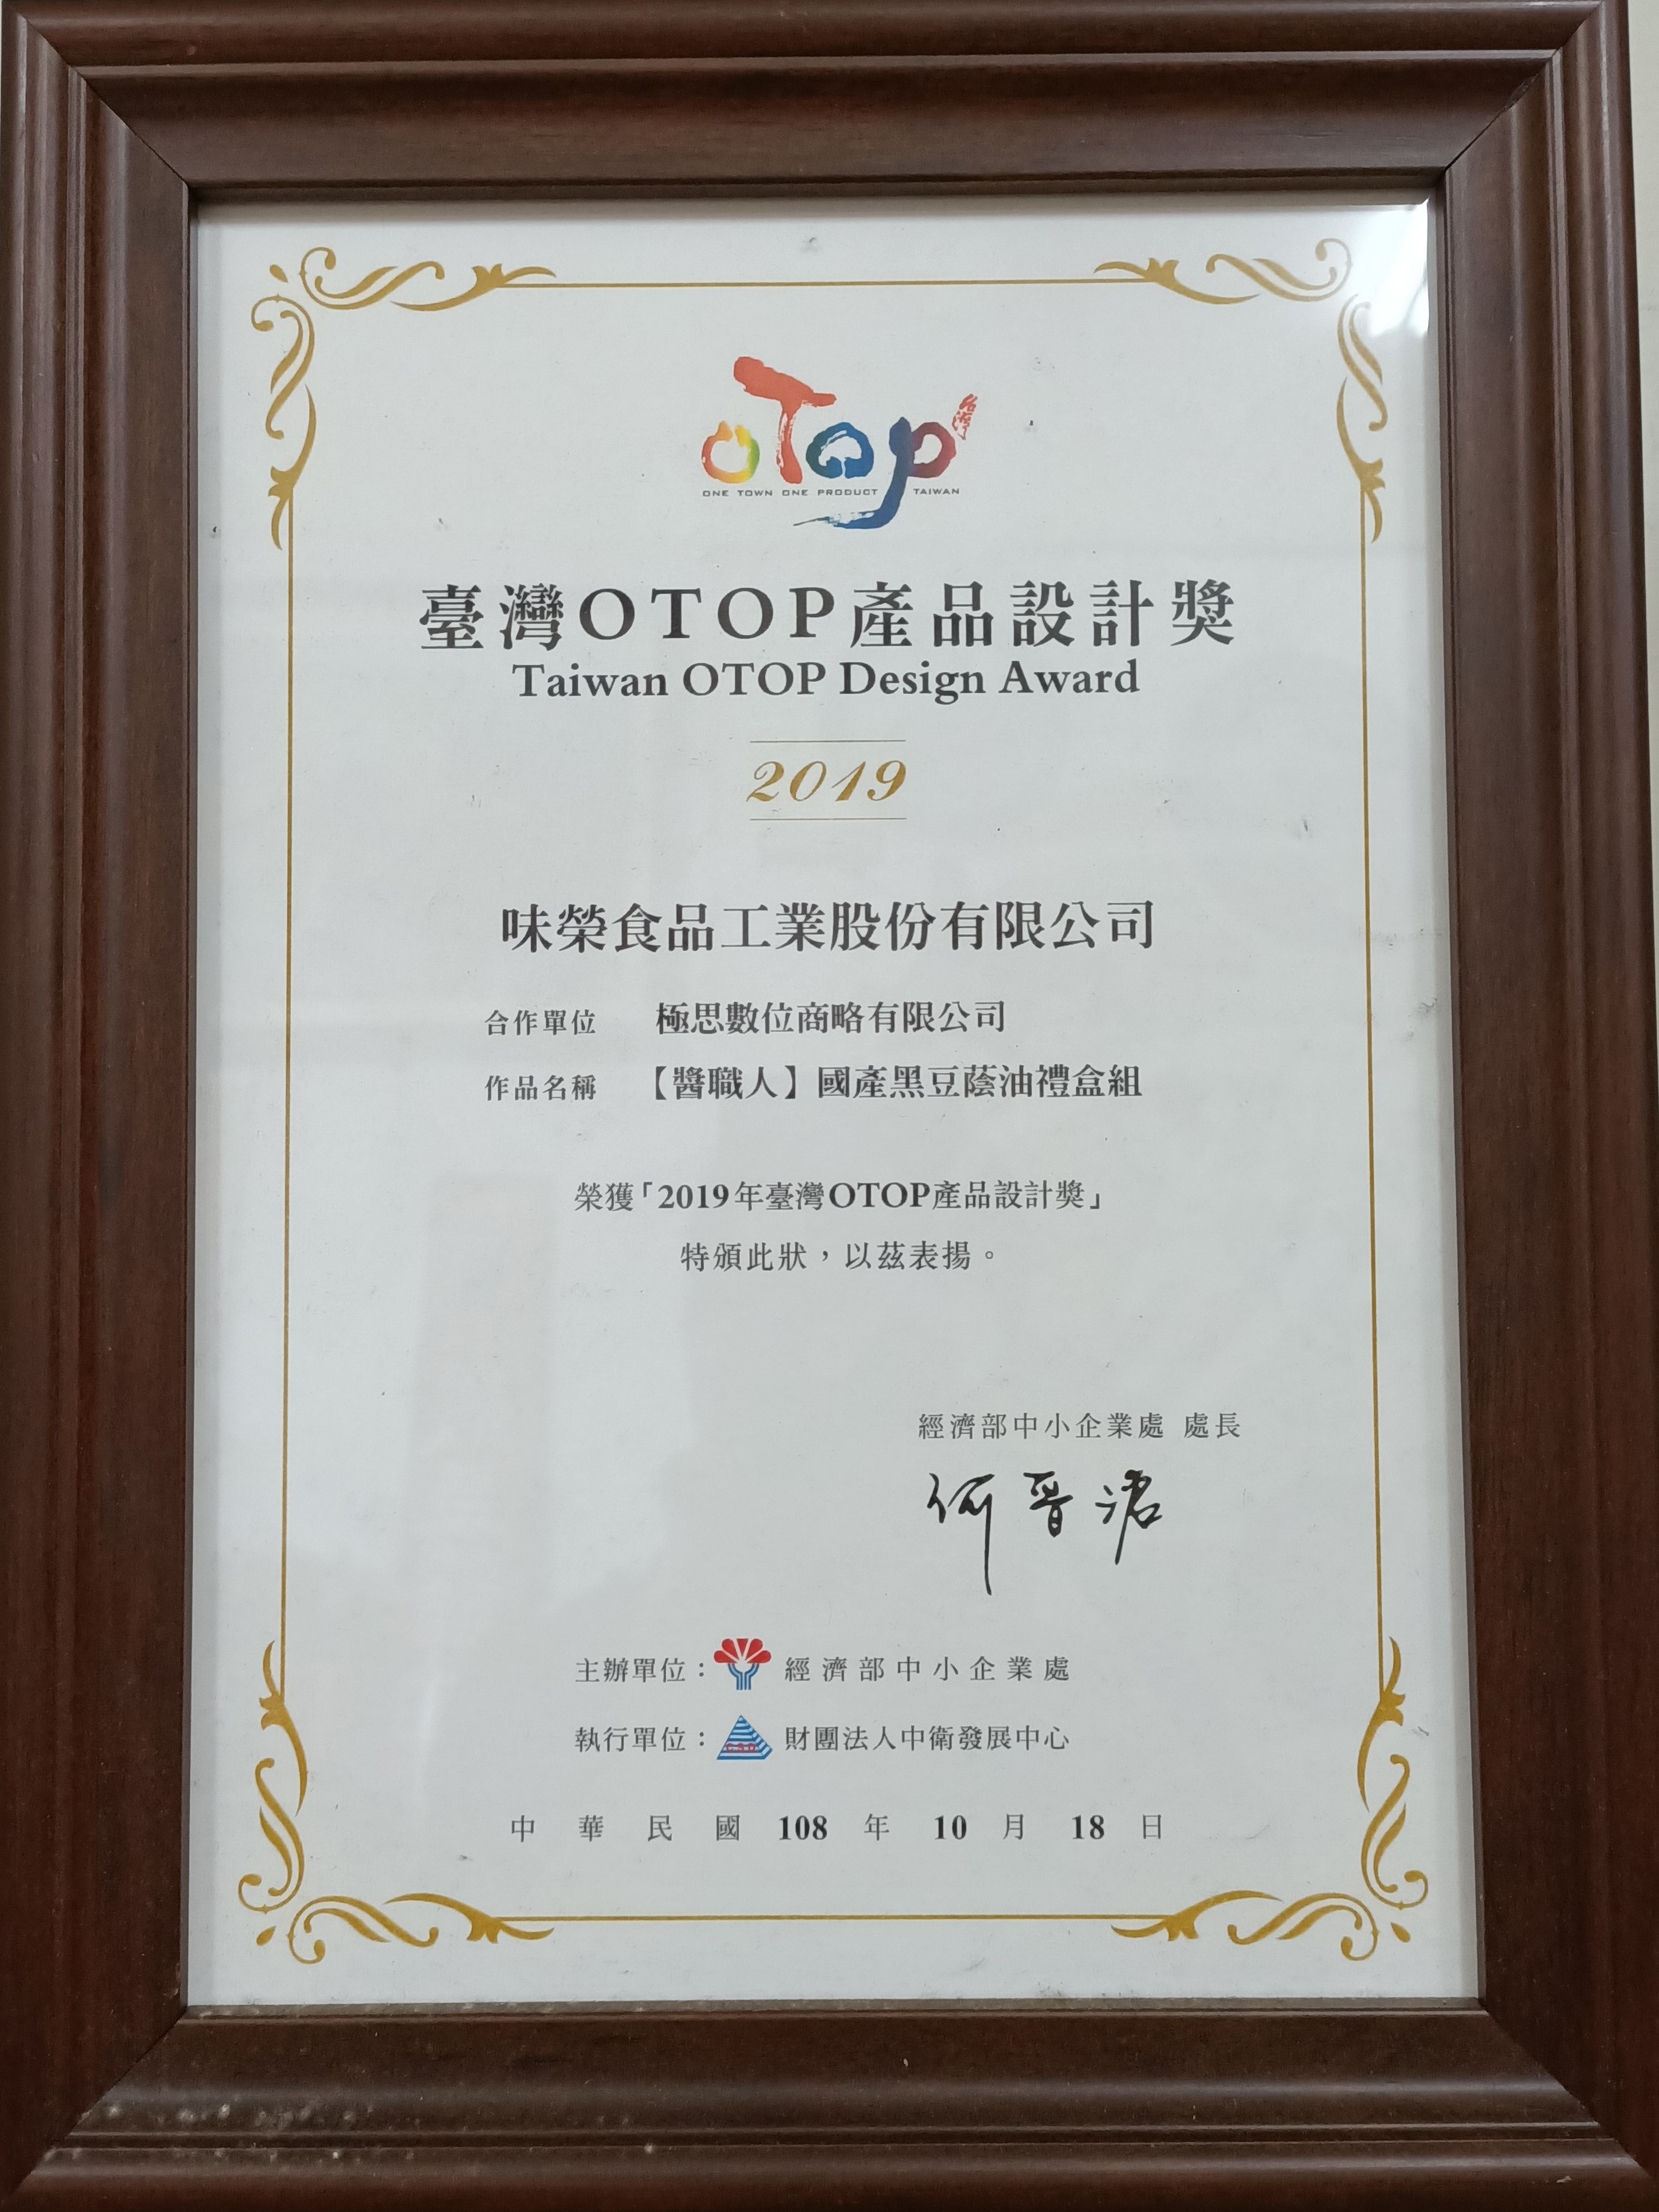 【江士連・国産黒豆油ギフトボックスセット】が「経済部中小企業部門」第13回台湾OTOPプロダクトデザイン賞を受賞